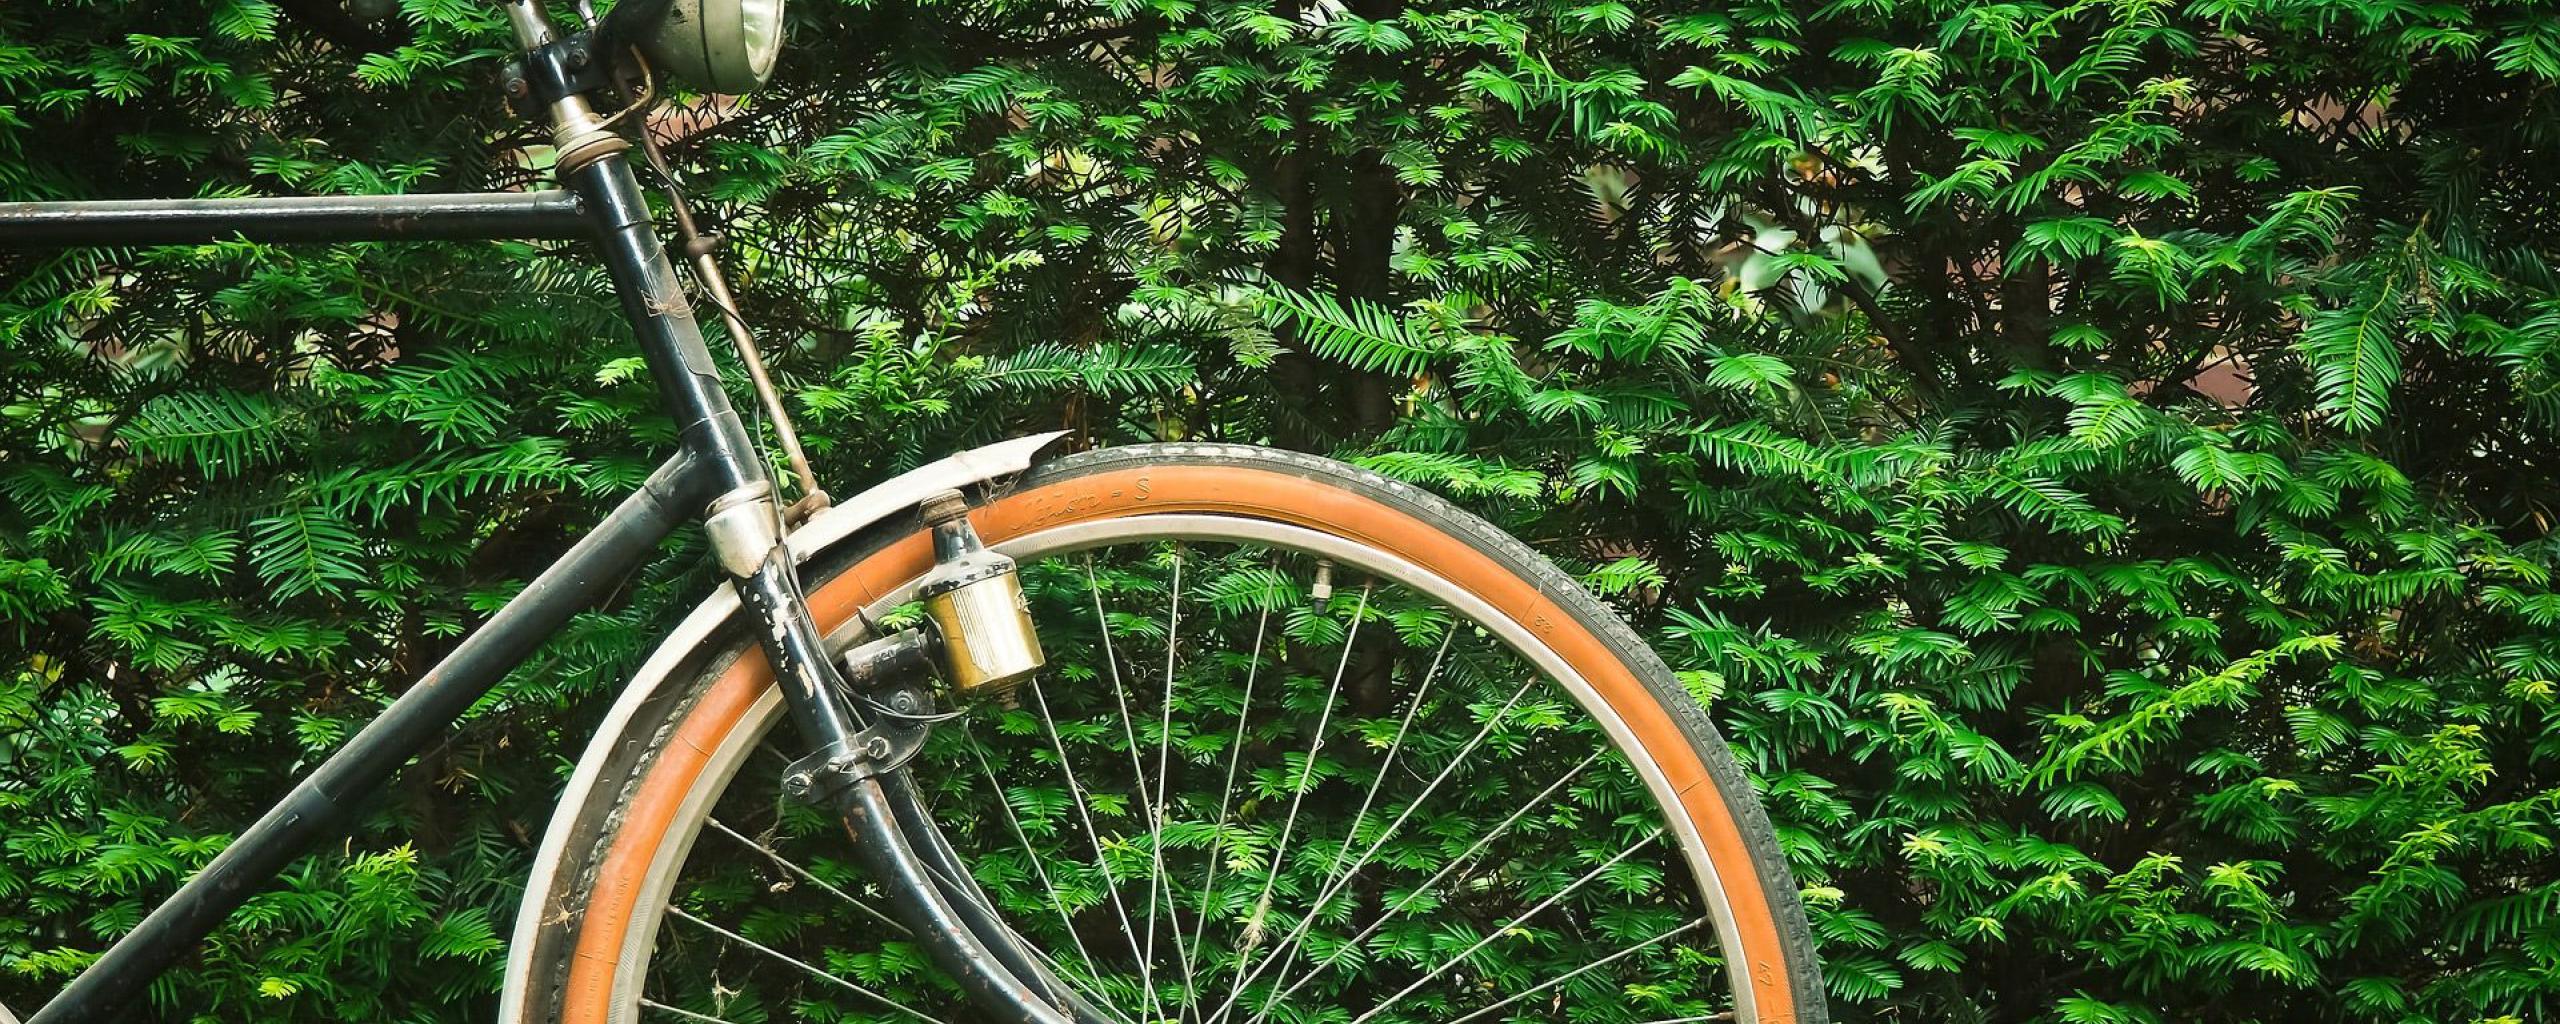 afbeelding van fiets